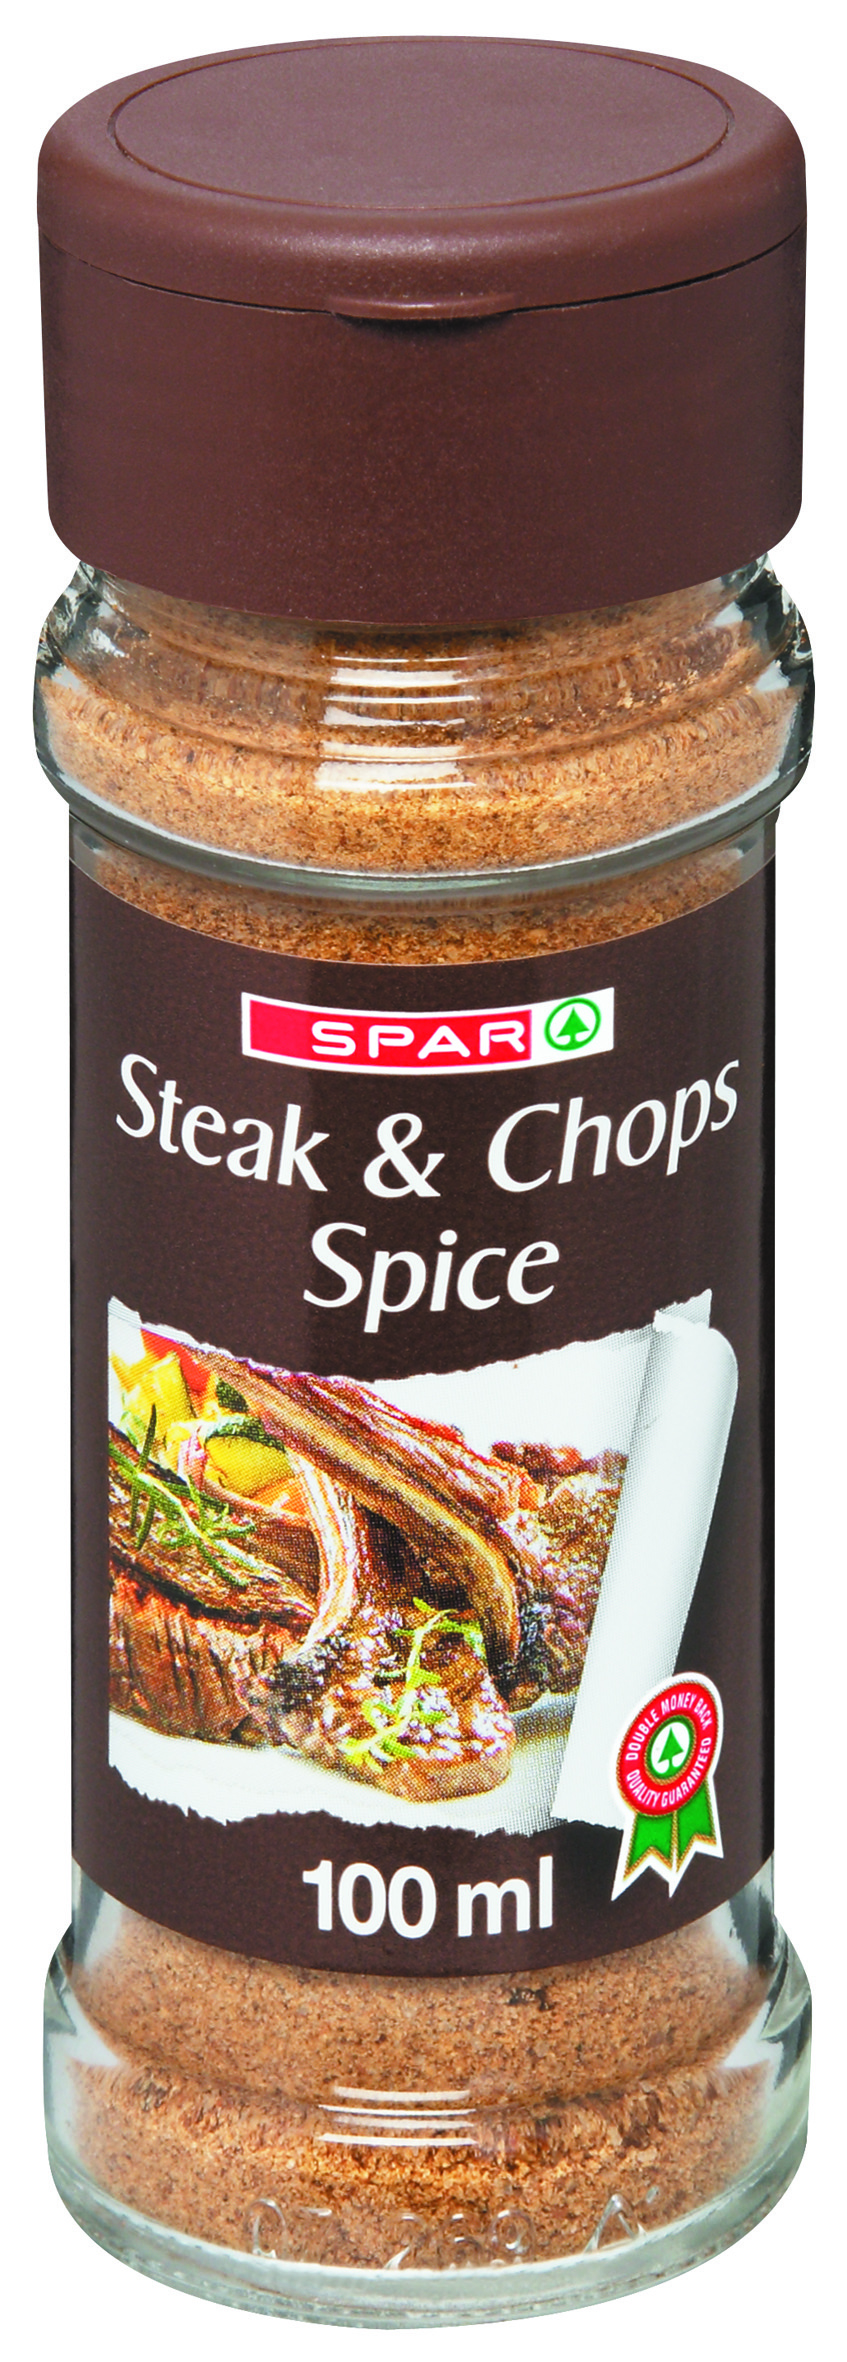 steak & chops spice